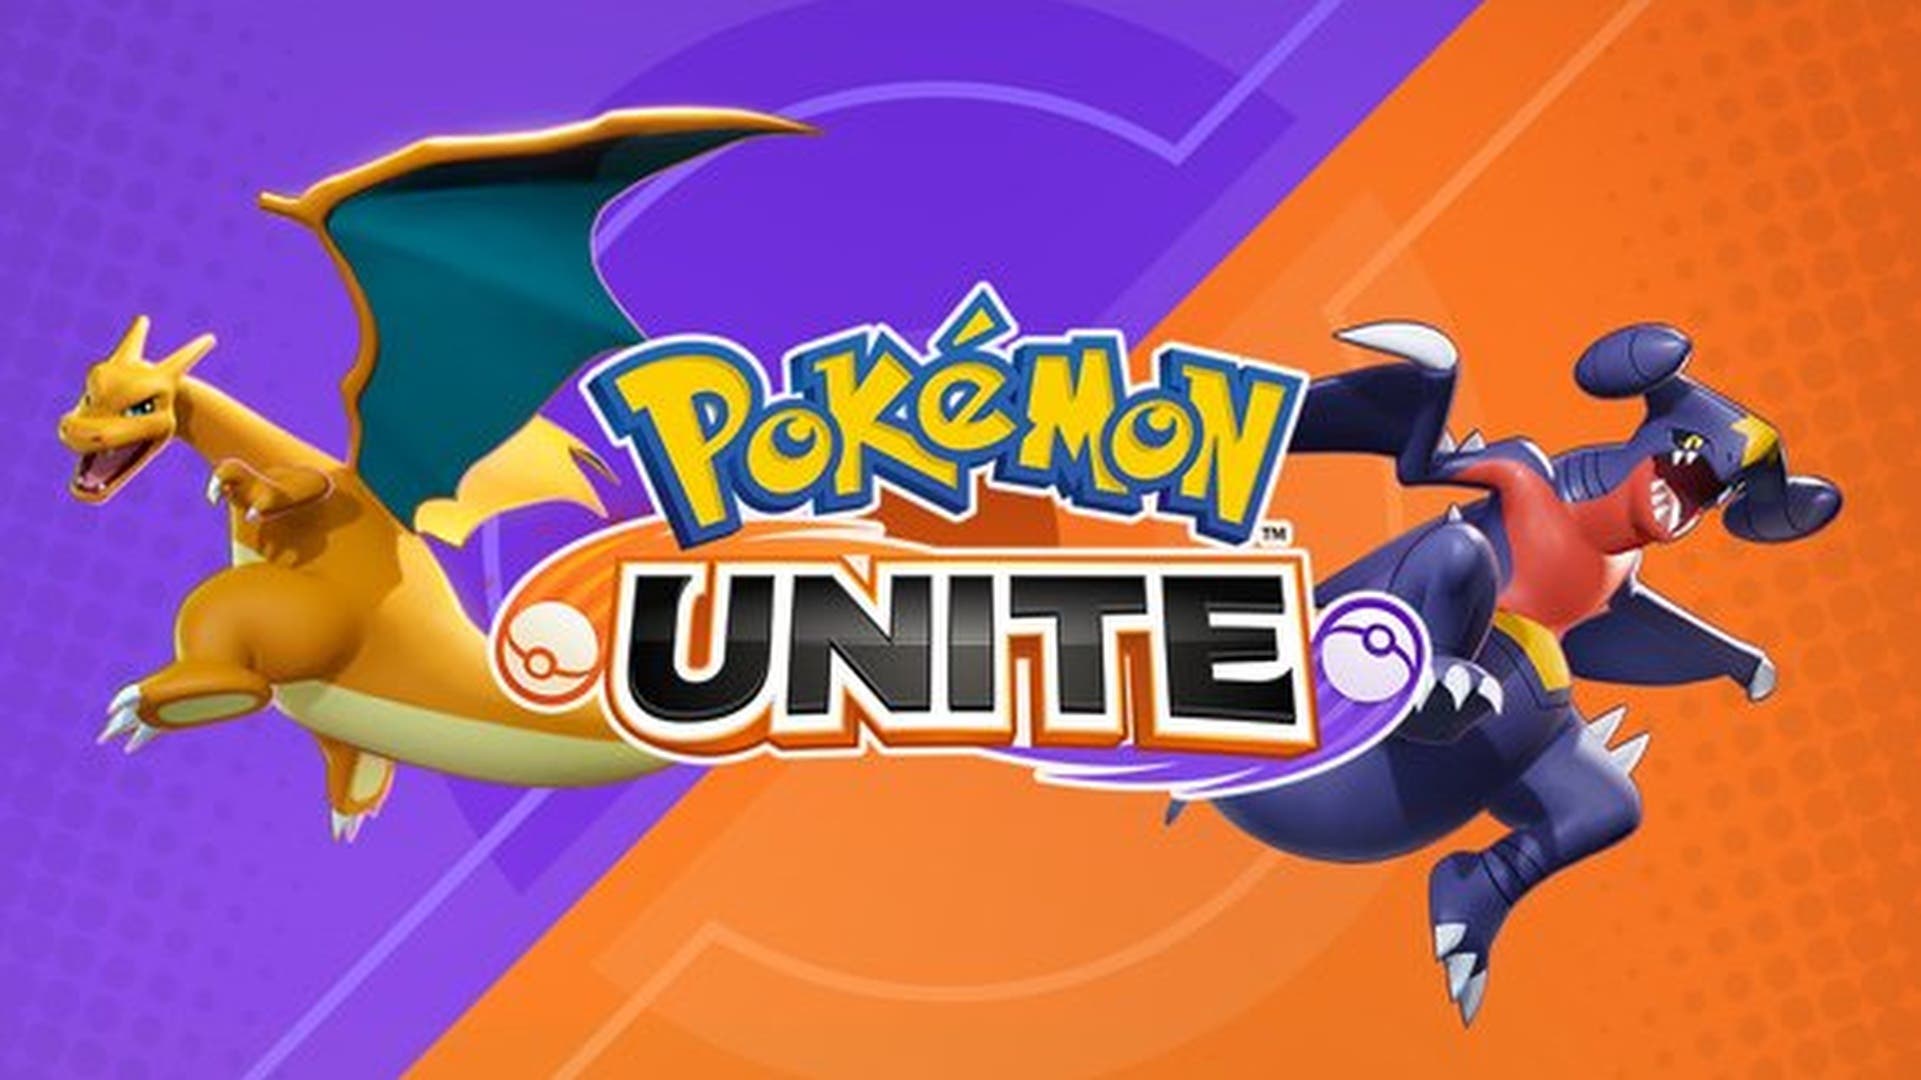 Pokémon Unite revela por accidente cuál será el próximo Pokémon en unirse al juego